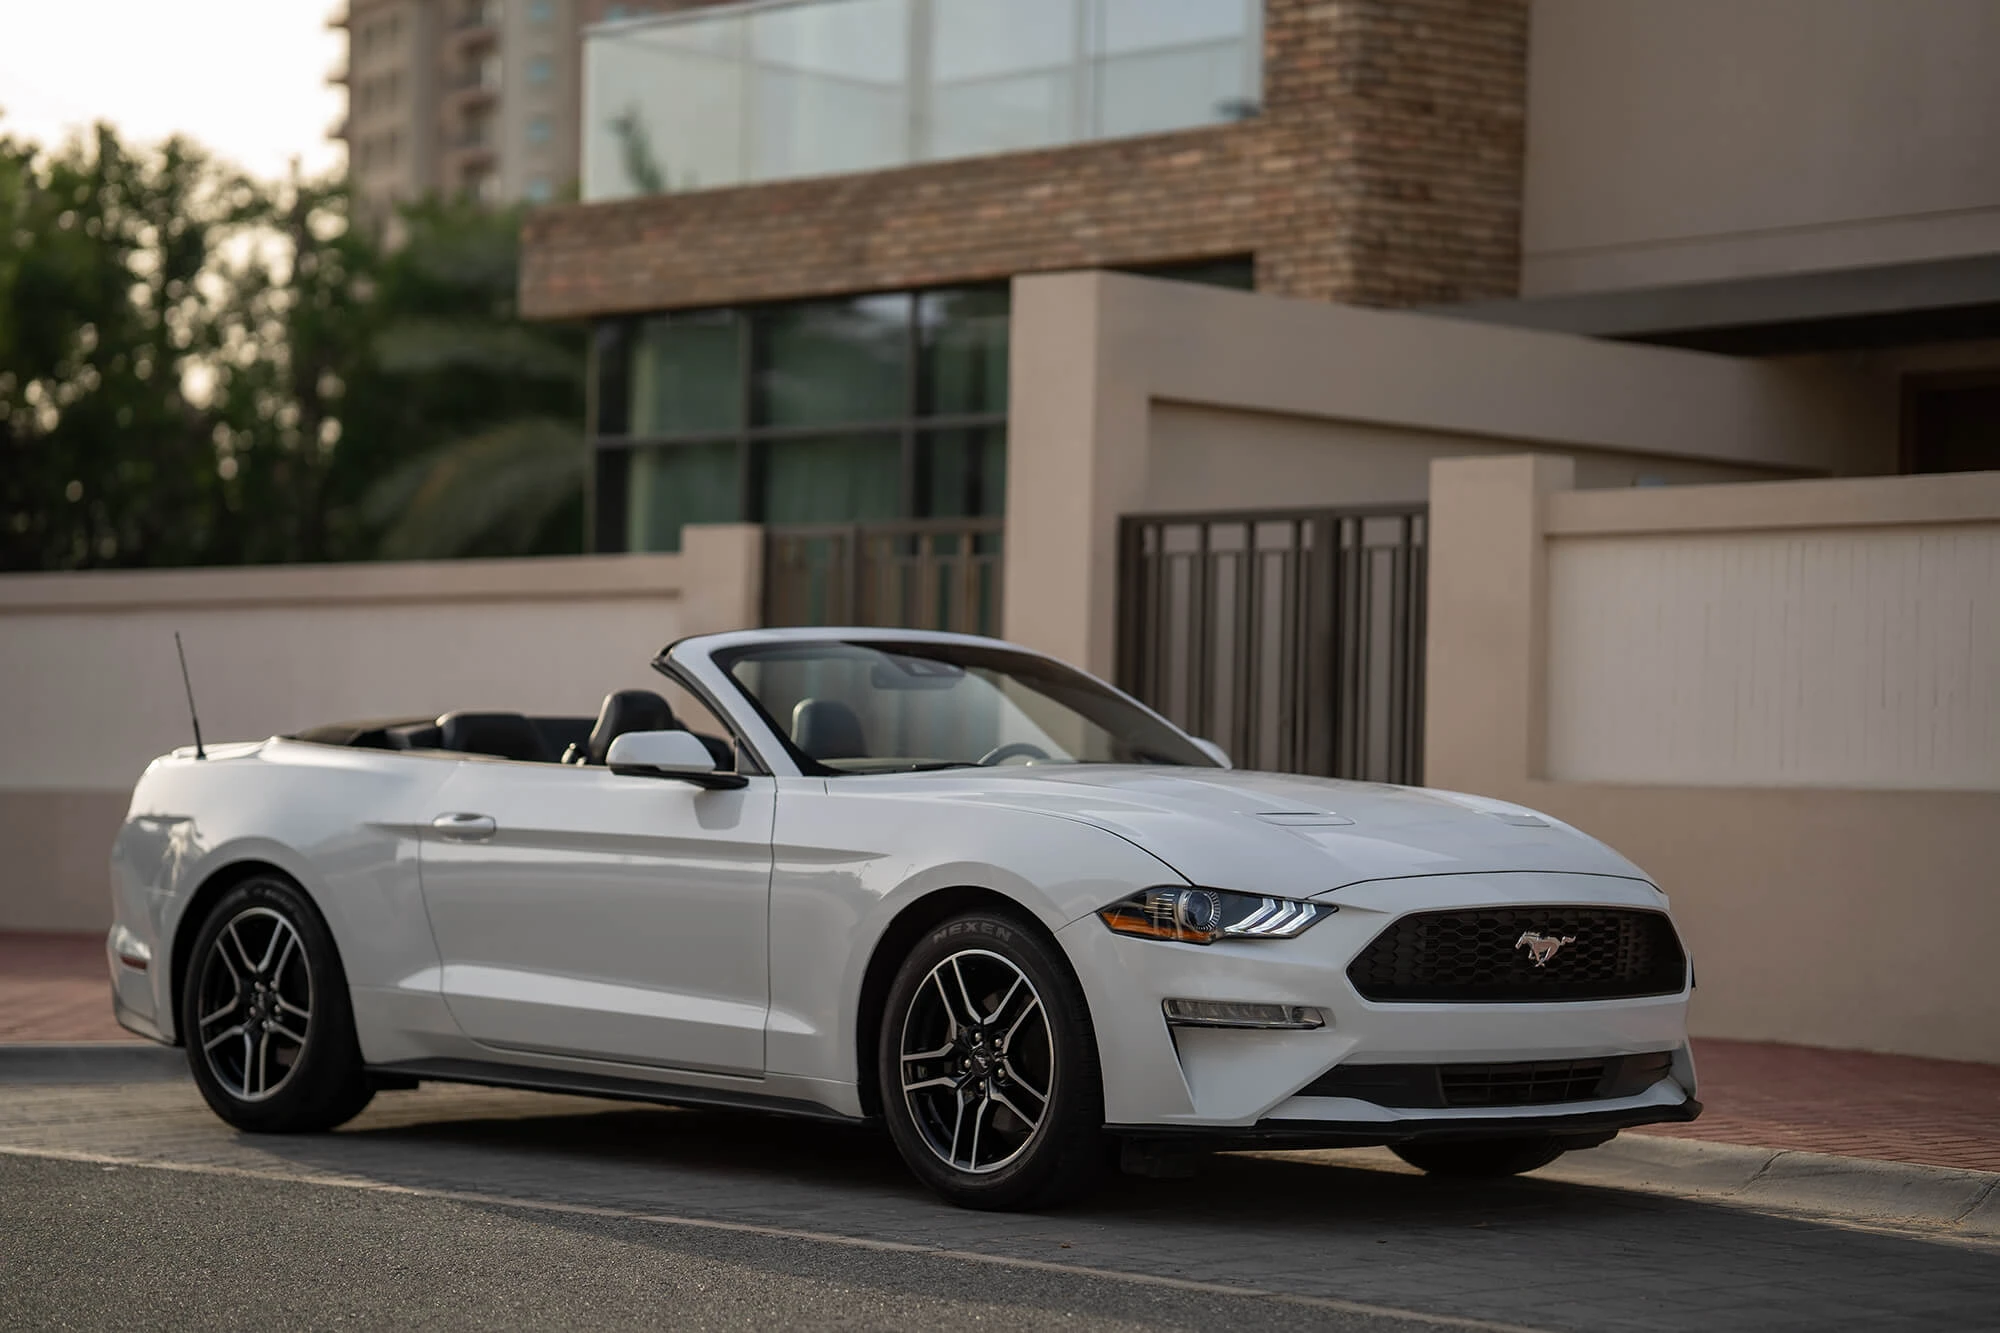 Ford Mustang hvid cabriolet